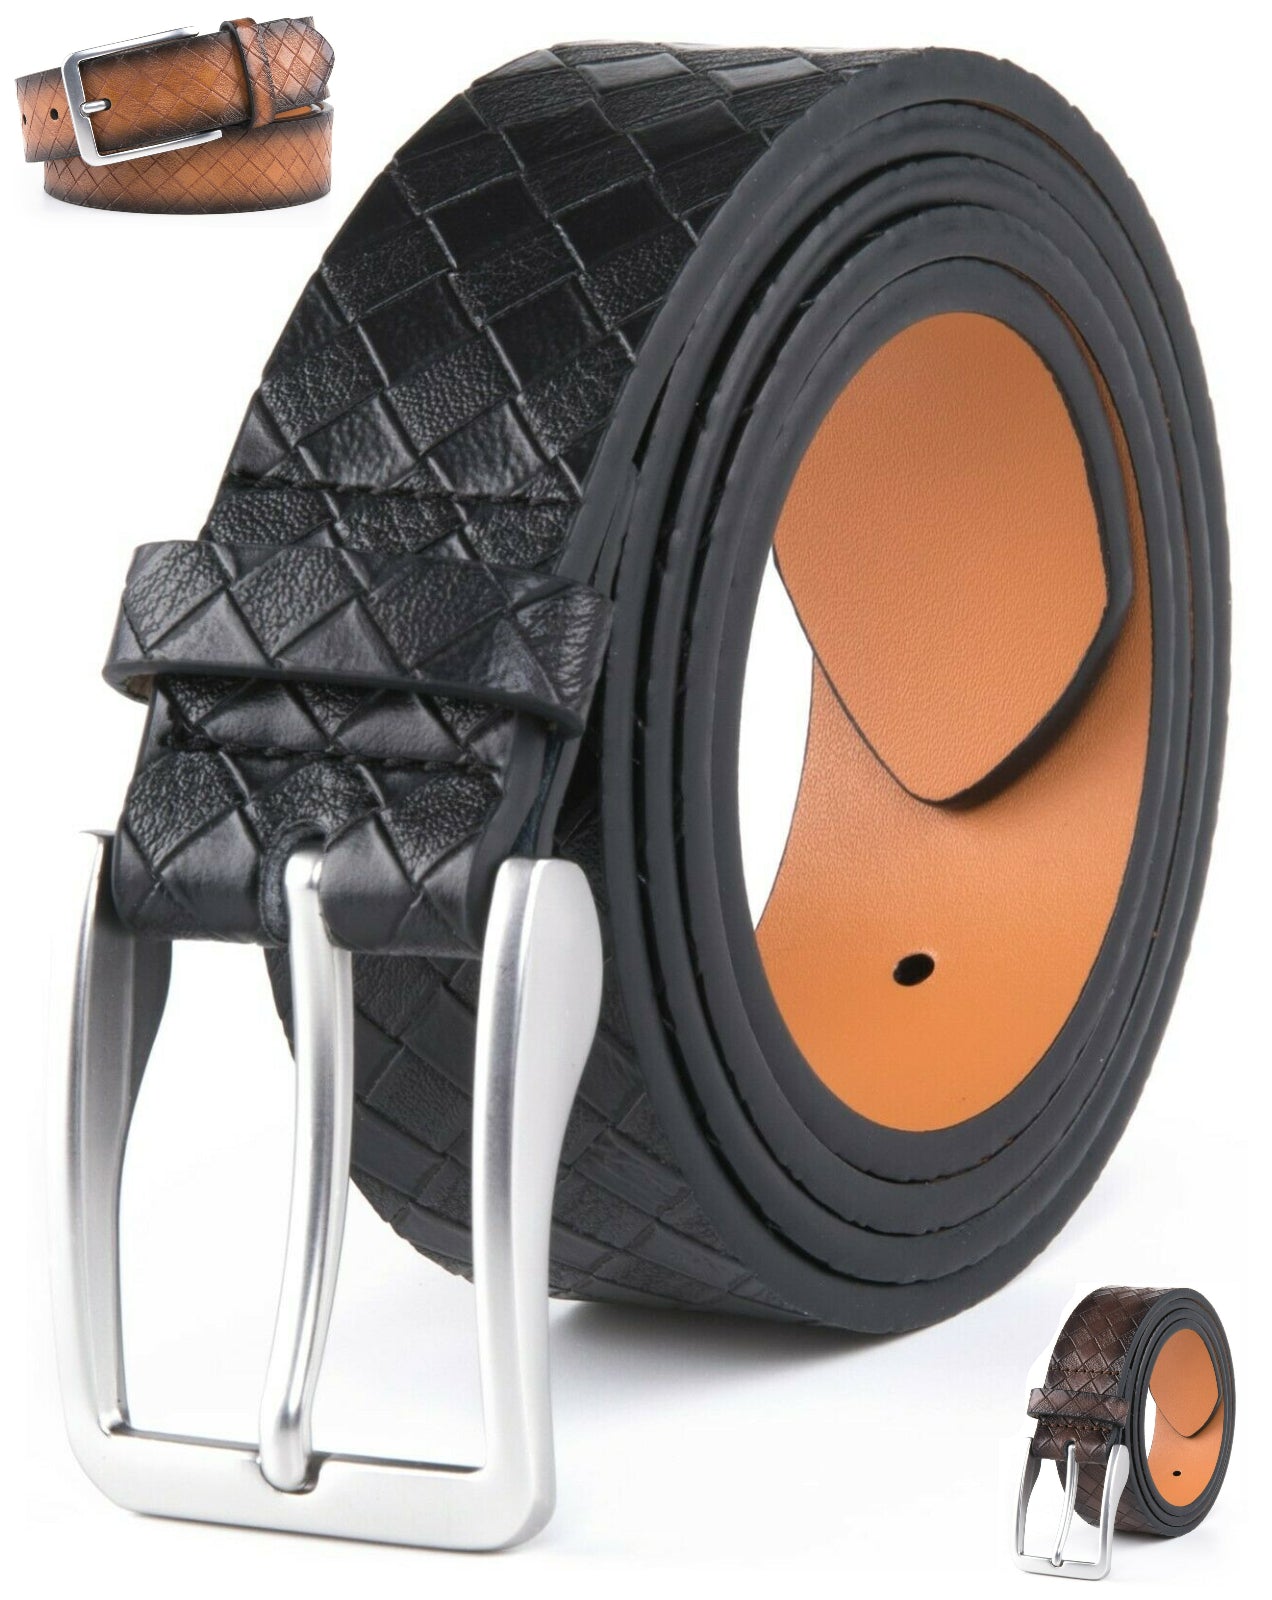 Men's Black Genuine Full Grain Leather Dress Belts, Belt For